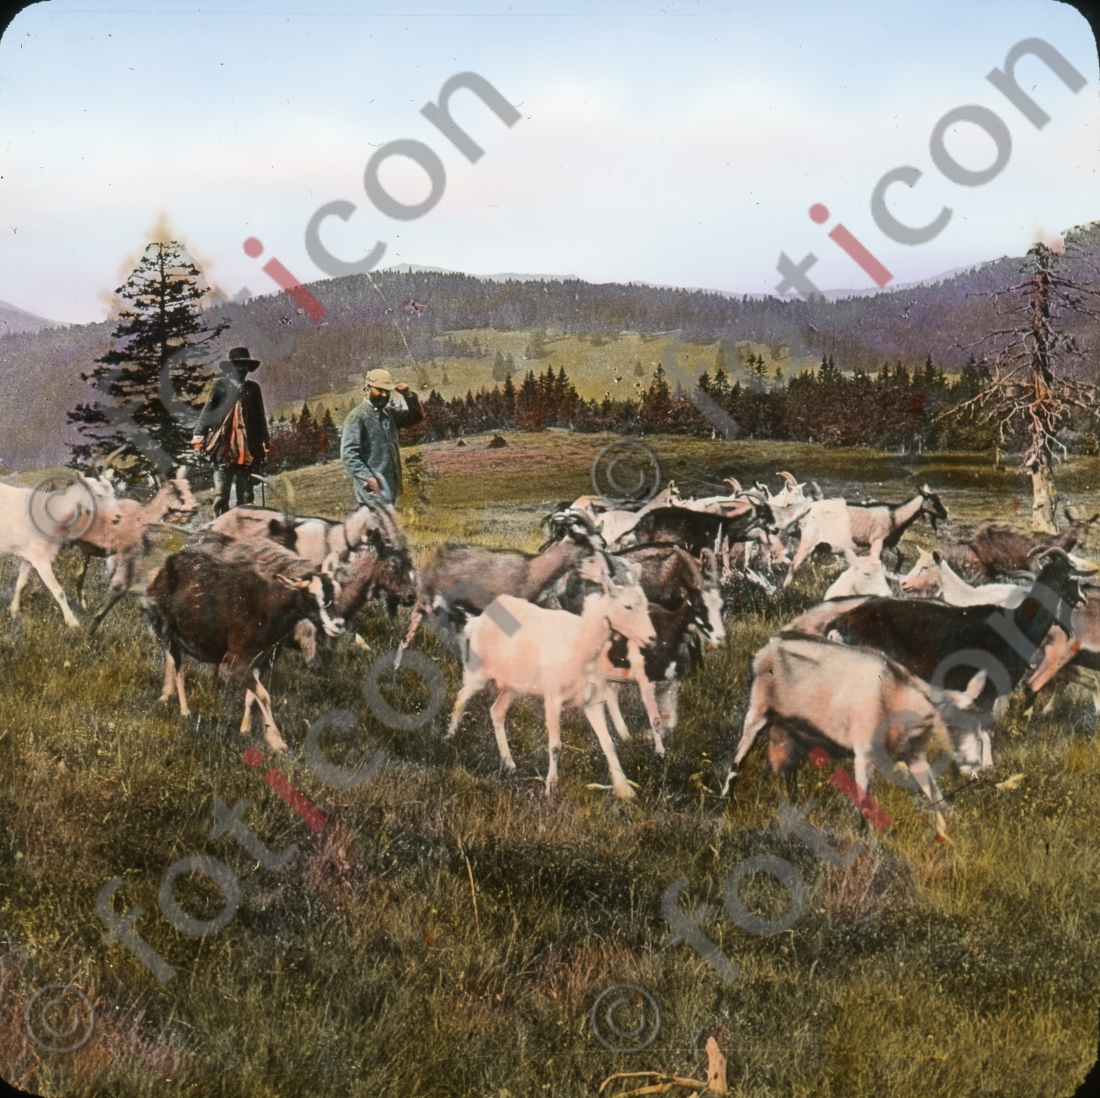 Ziegen im Schwarzwald | Goats in the Black Forest (foticon-simon-127-017.jpg)